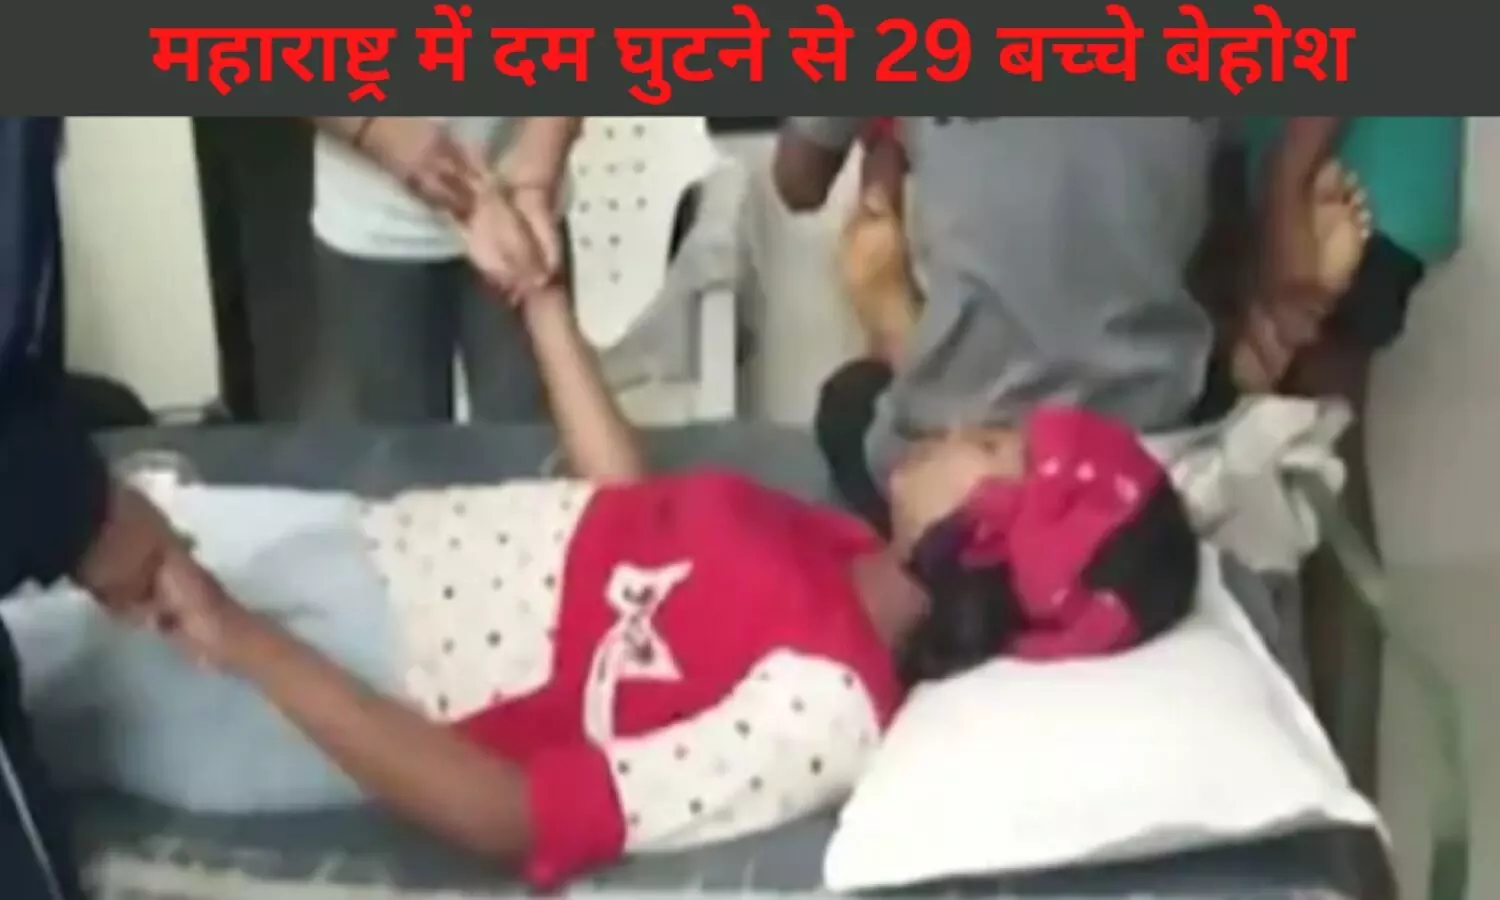 Maharashtra: महाराष्ट्र में शर्मनाक घटना, ट्रक में ठूंस-ठूंस कर भरे गए थे खिलाड़ी छात्र, दम घुटने से 29 बच्चे बेहोश